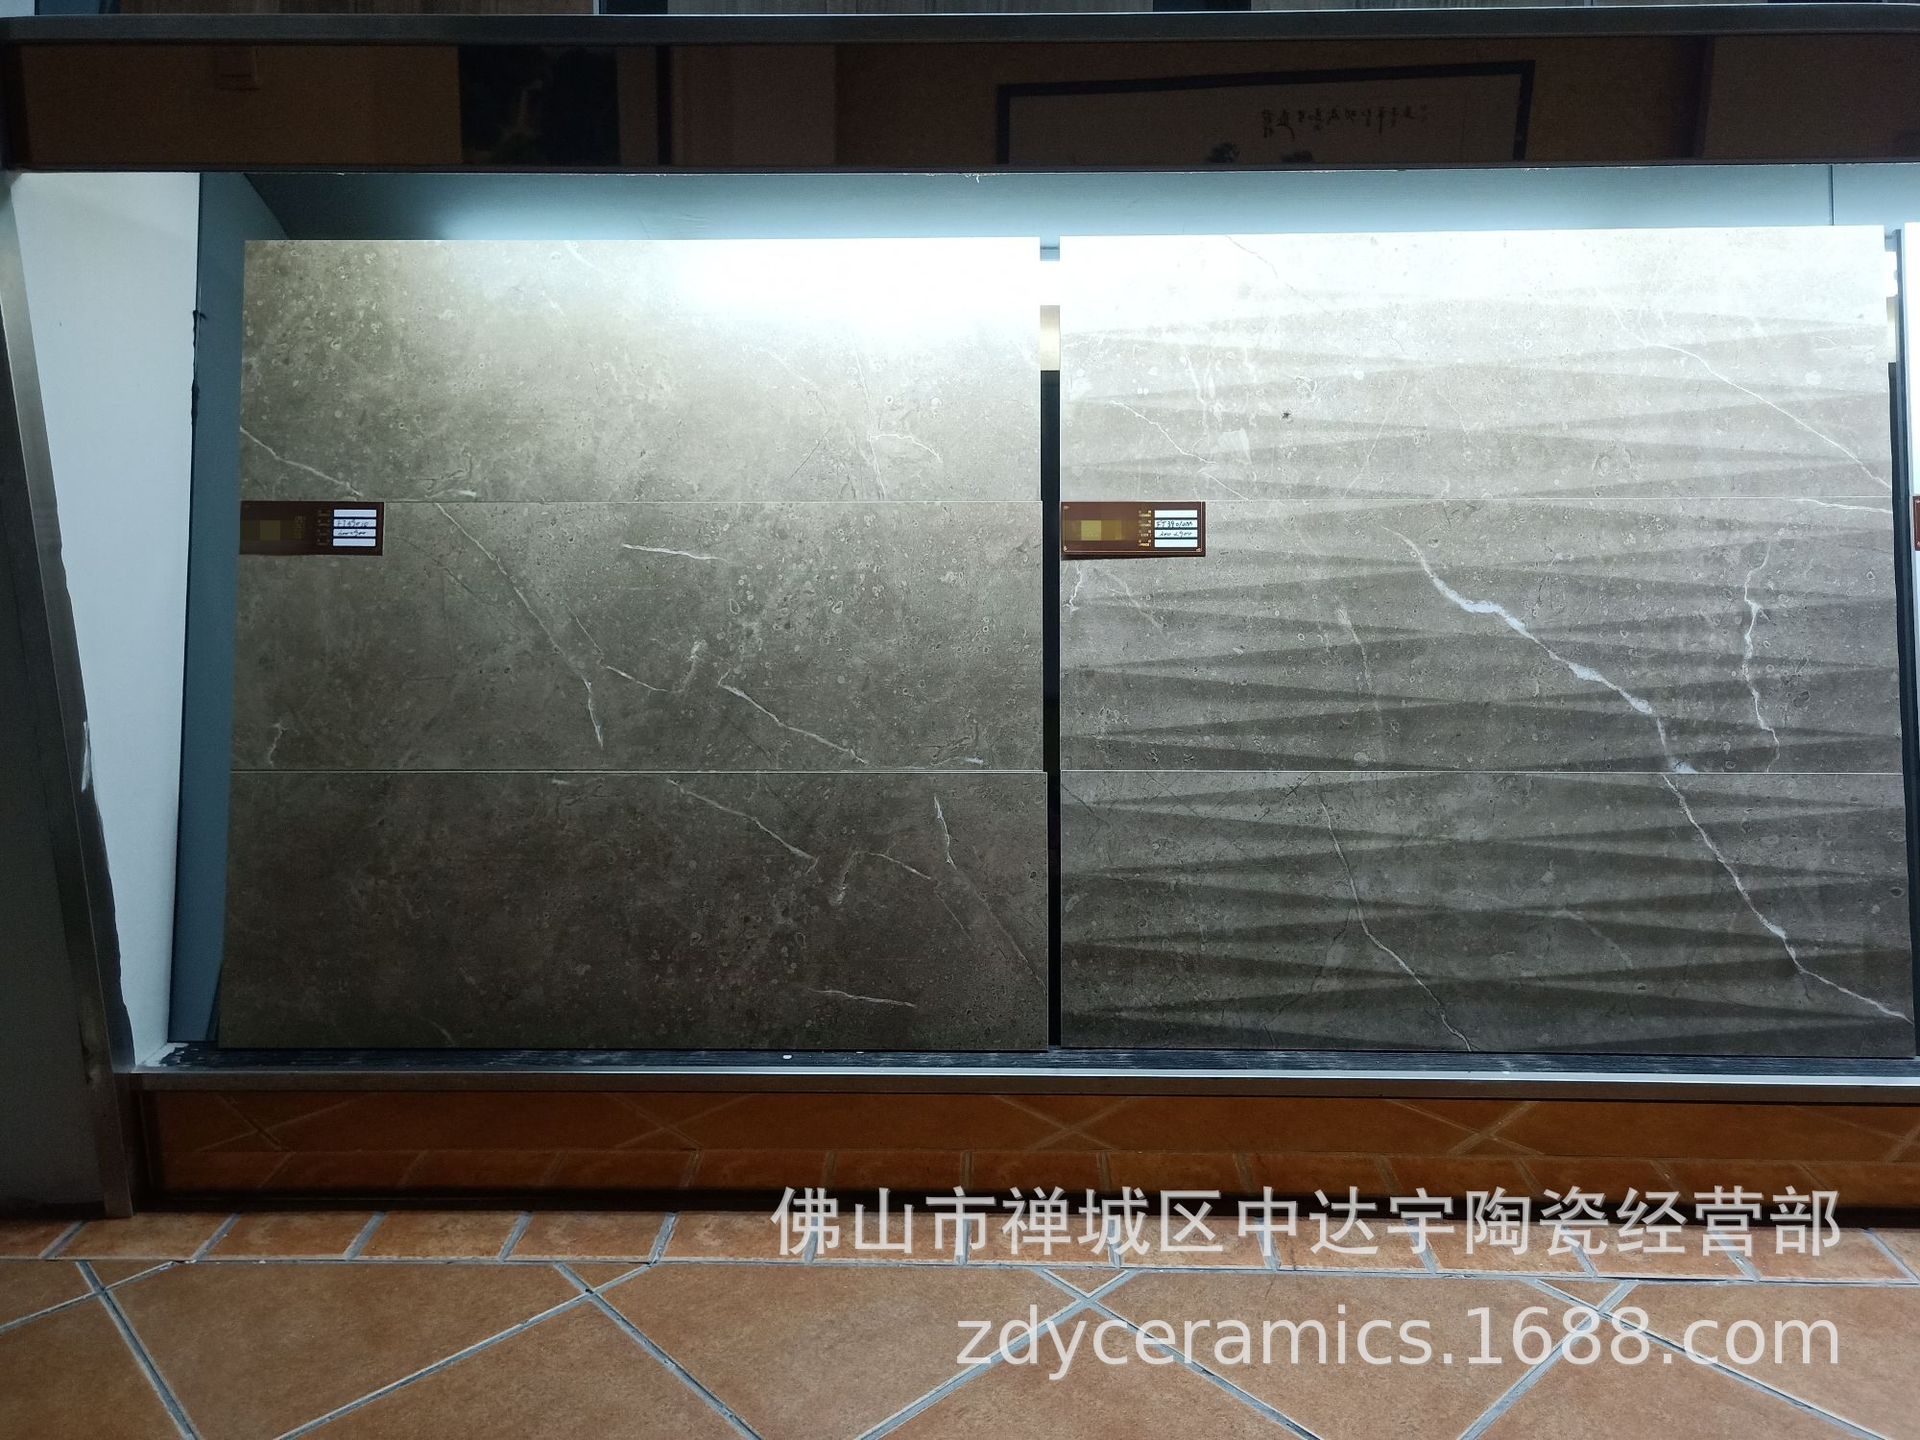 佛山新系列300X900mm 仿古瓷砖防滑防潮客厅厨房浴室墙面砖地面砖JXHD390示例图14